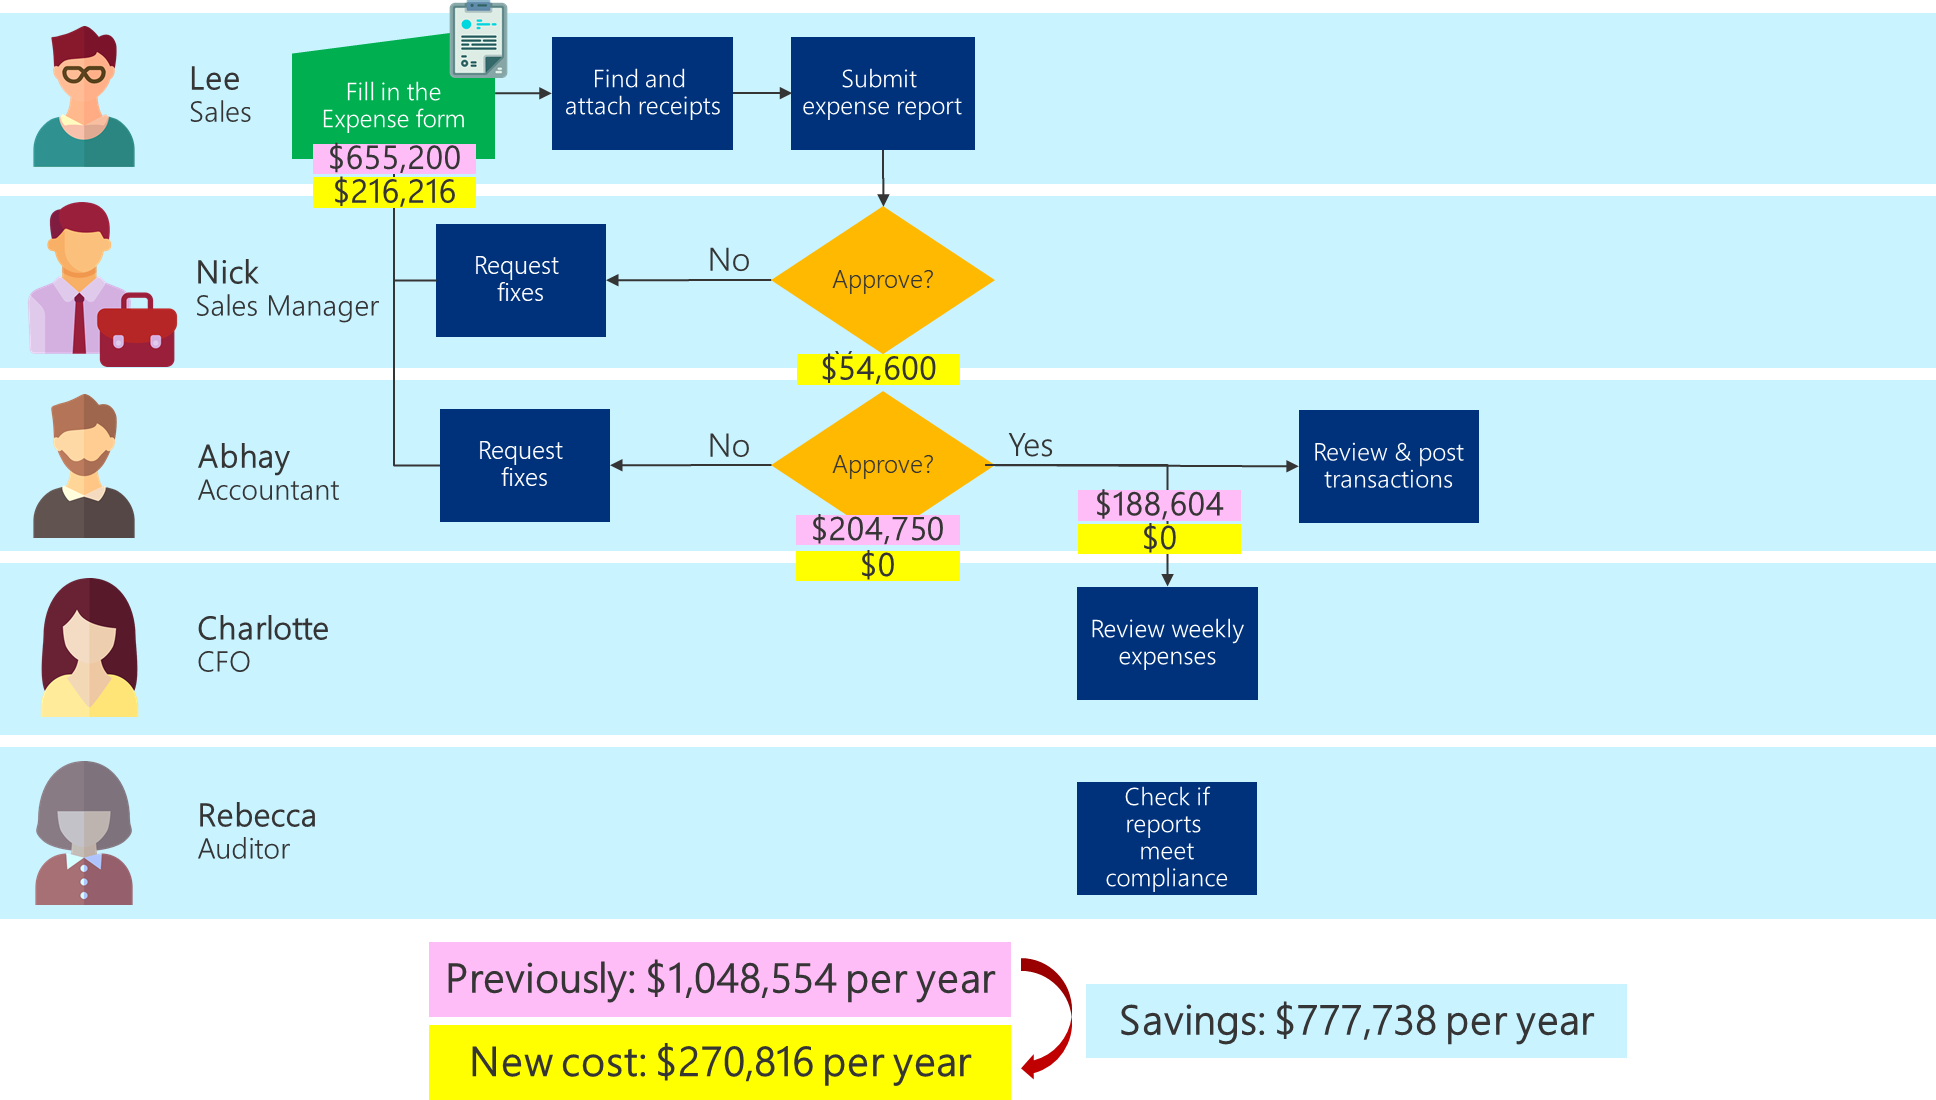 최적화된 프로세스에 대한 업데이트된 비용과 얻을 수 있는 총 절감액을 보여주는 비즈니스 프로세스 흐름도.